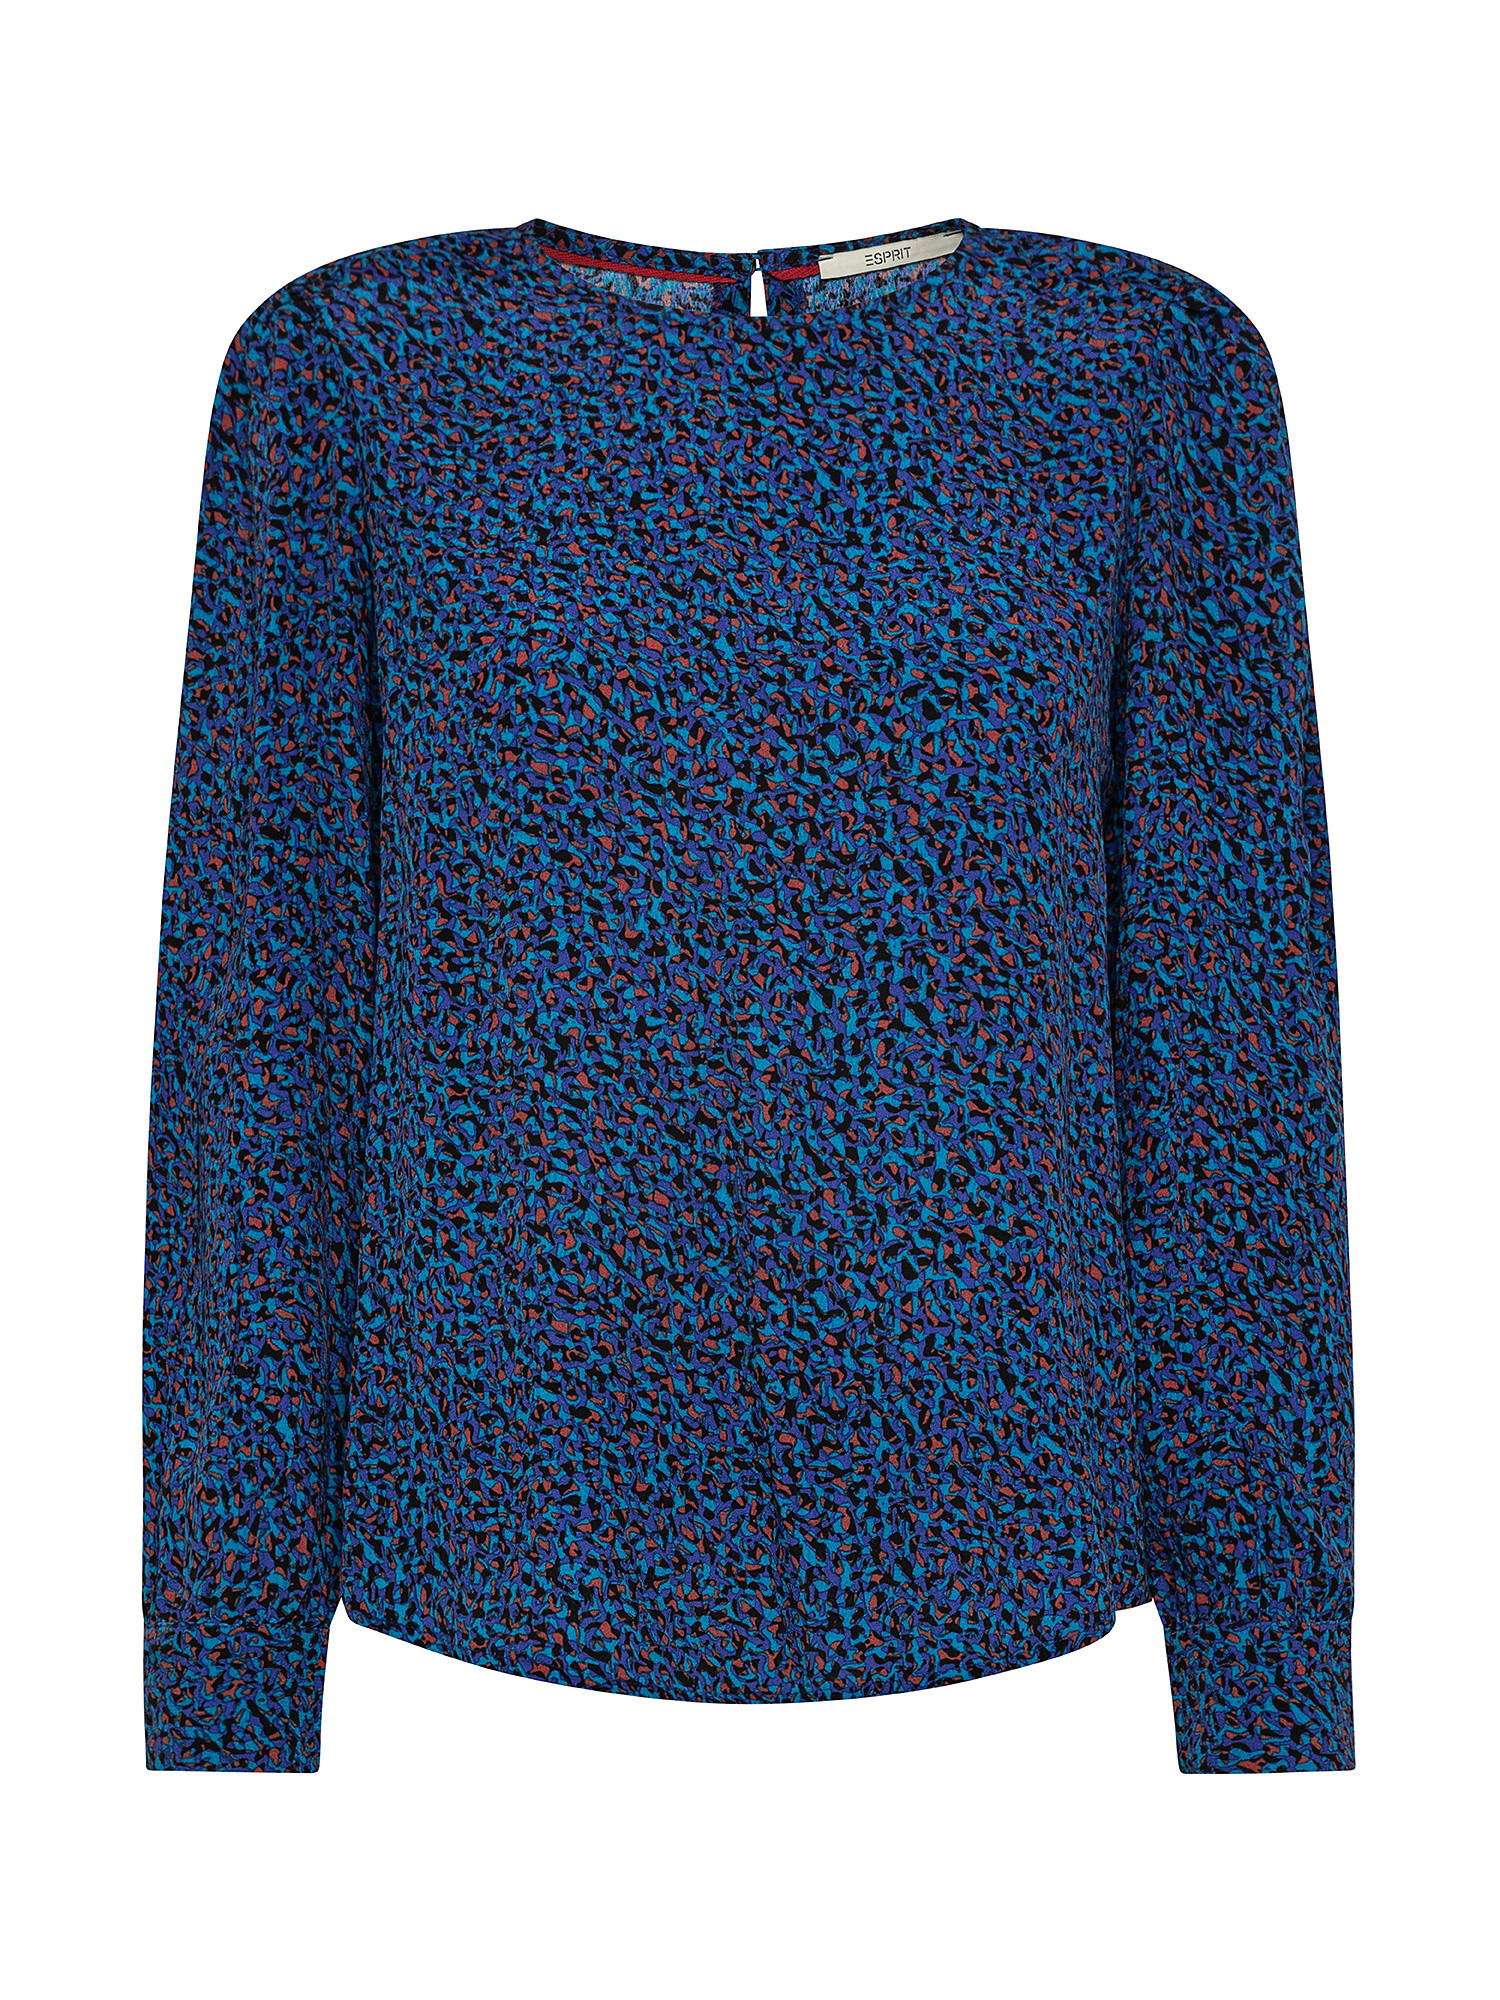 Patterned blouse, Dark Blue, large image number 0